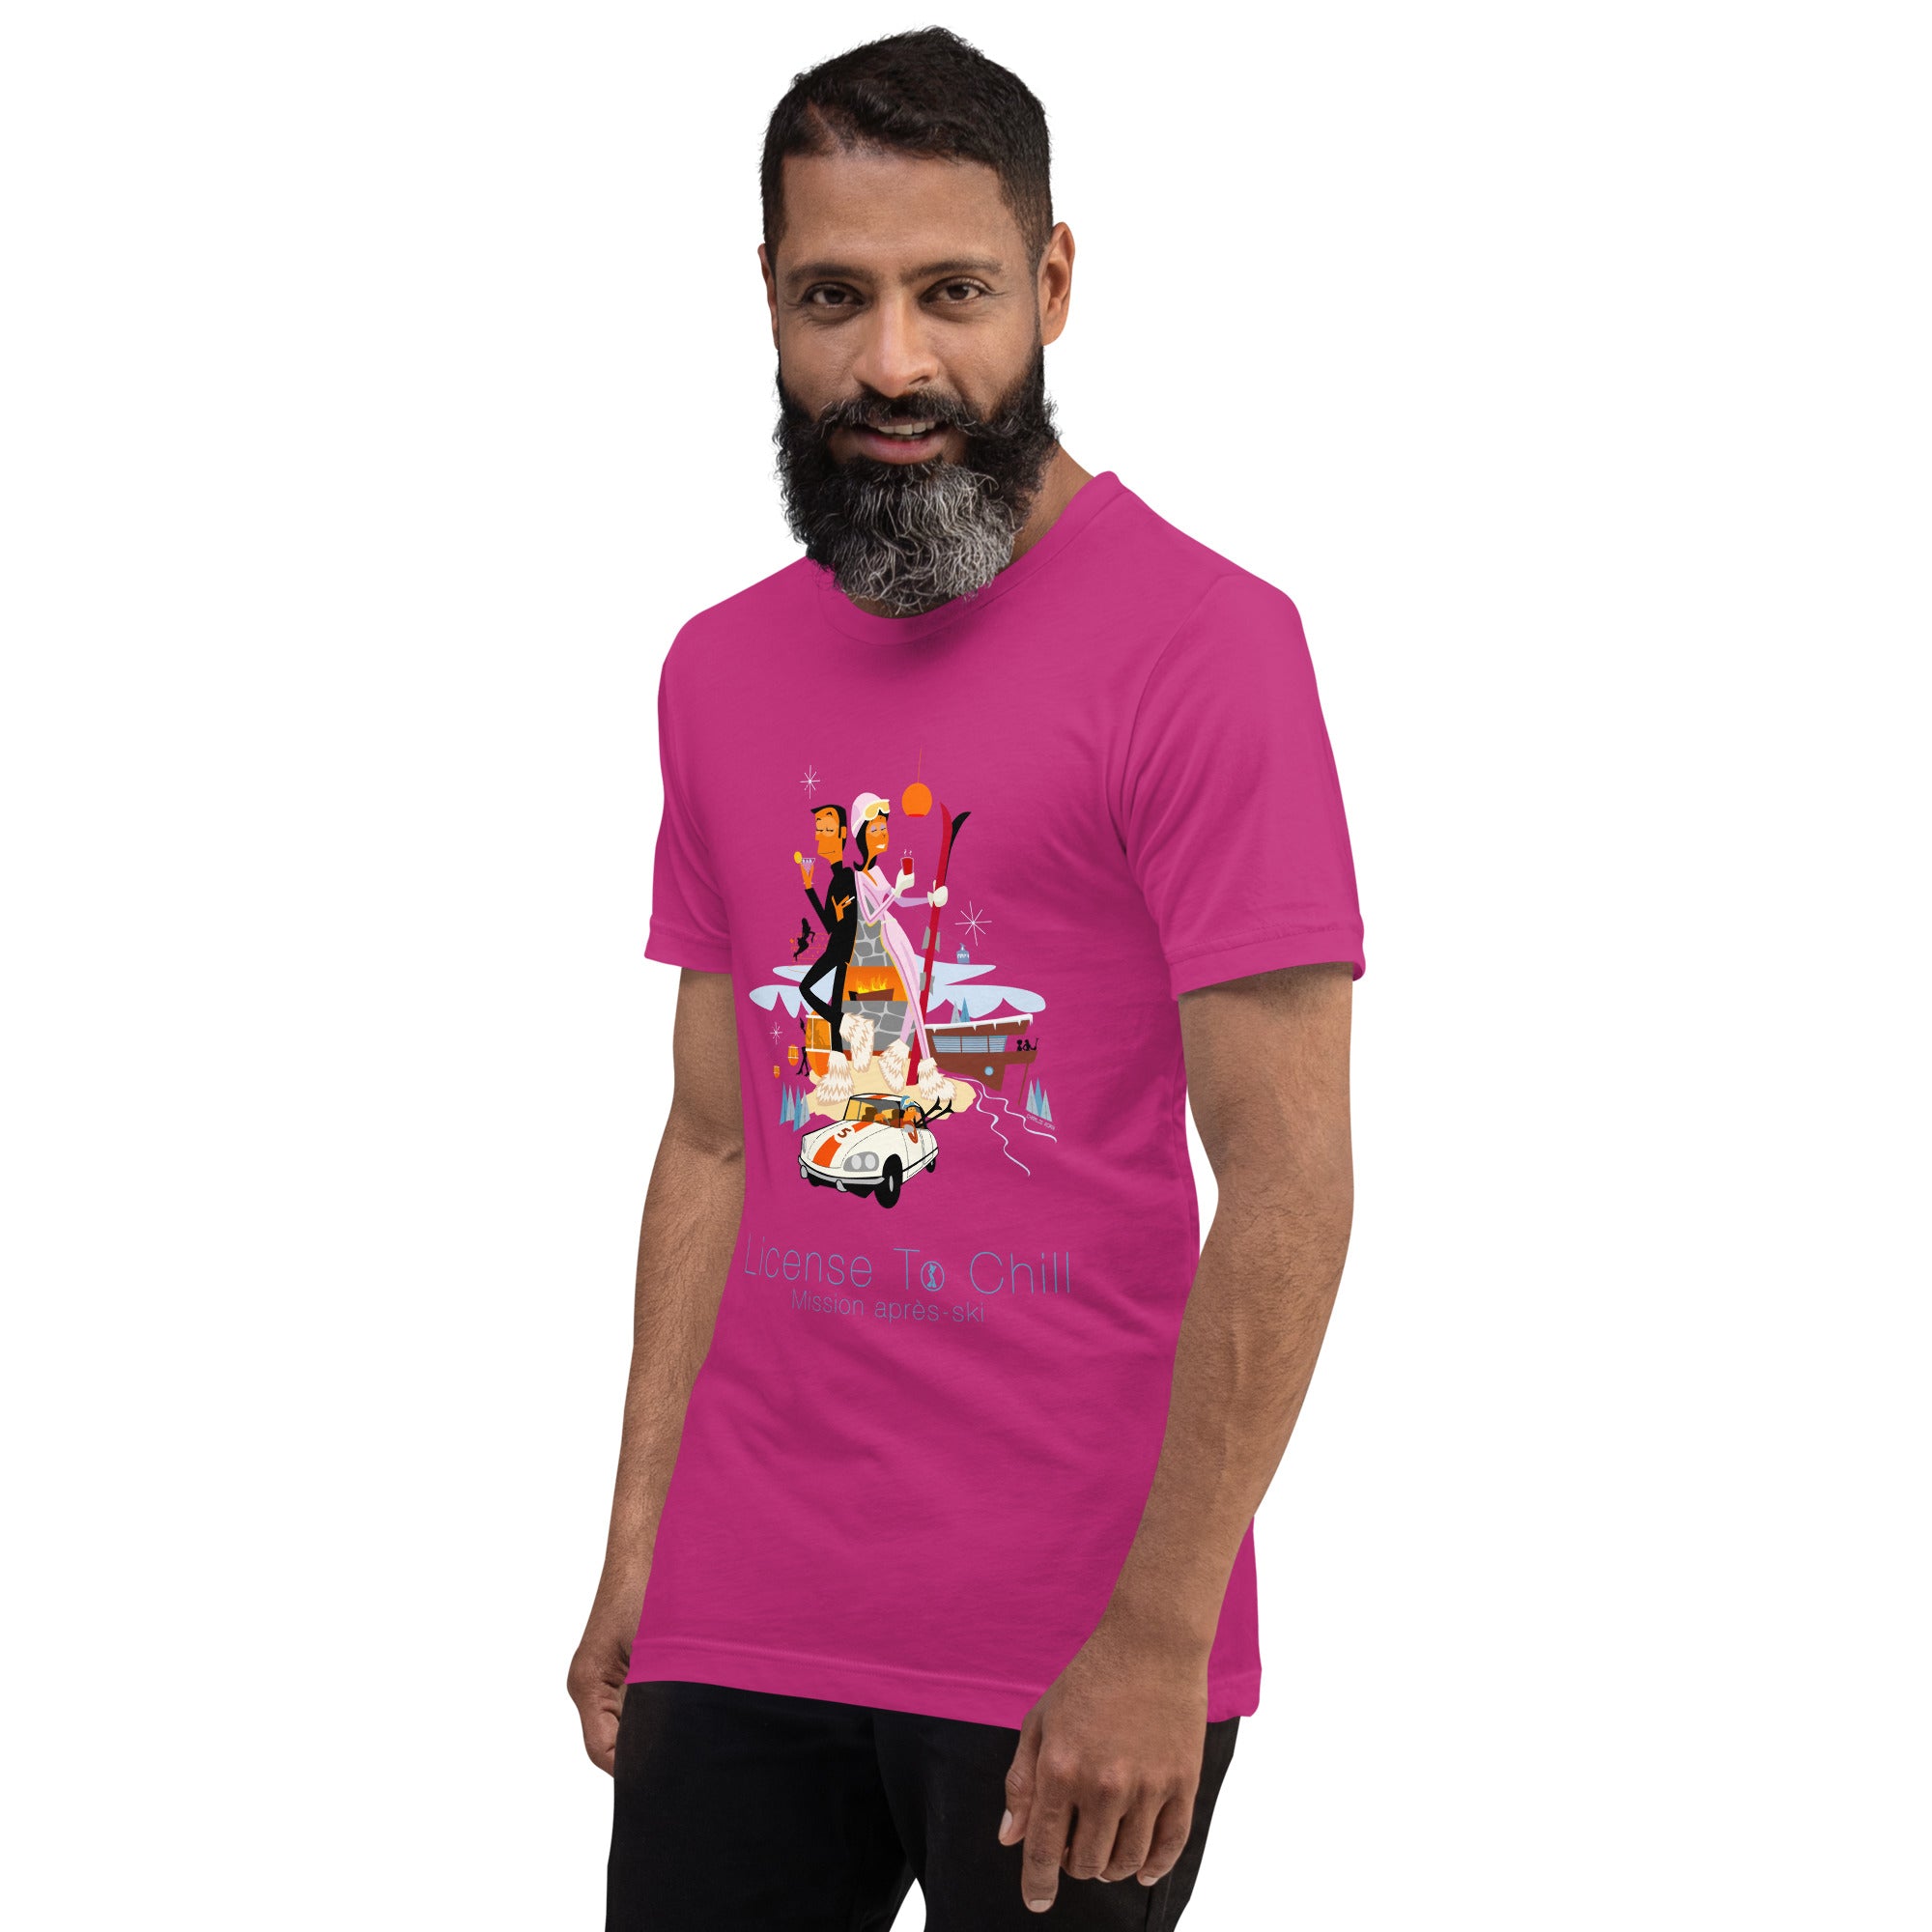 T-shirt en coton unisexe License To Chill Mission Après-Ski sur couleurs vives